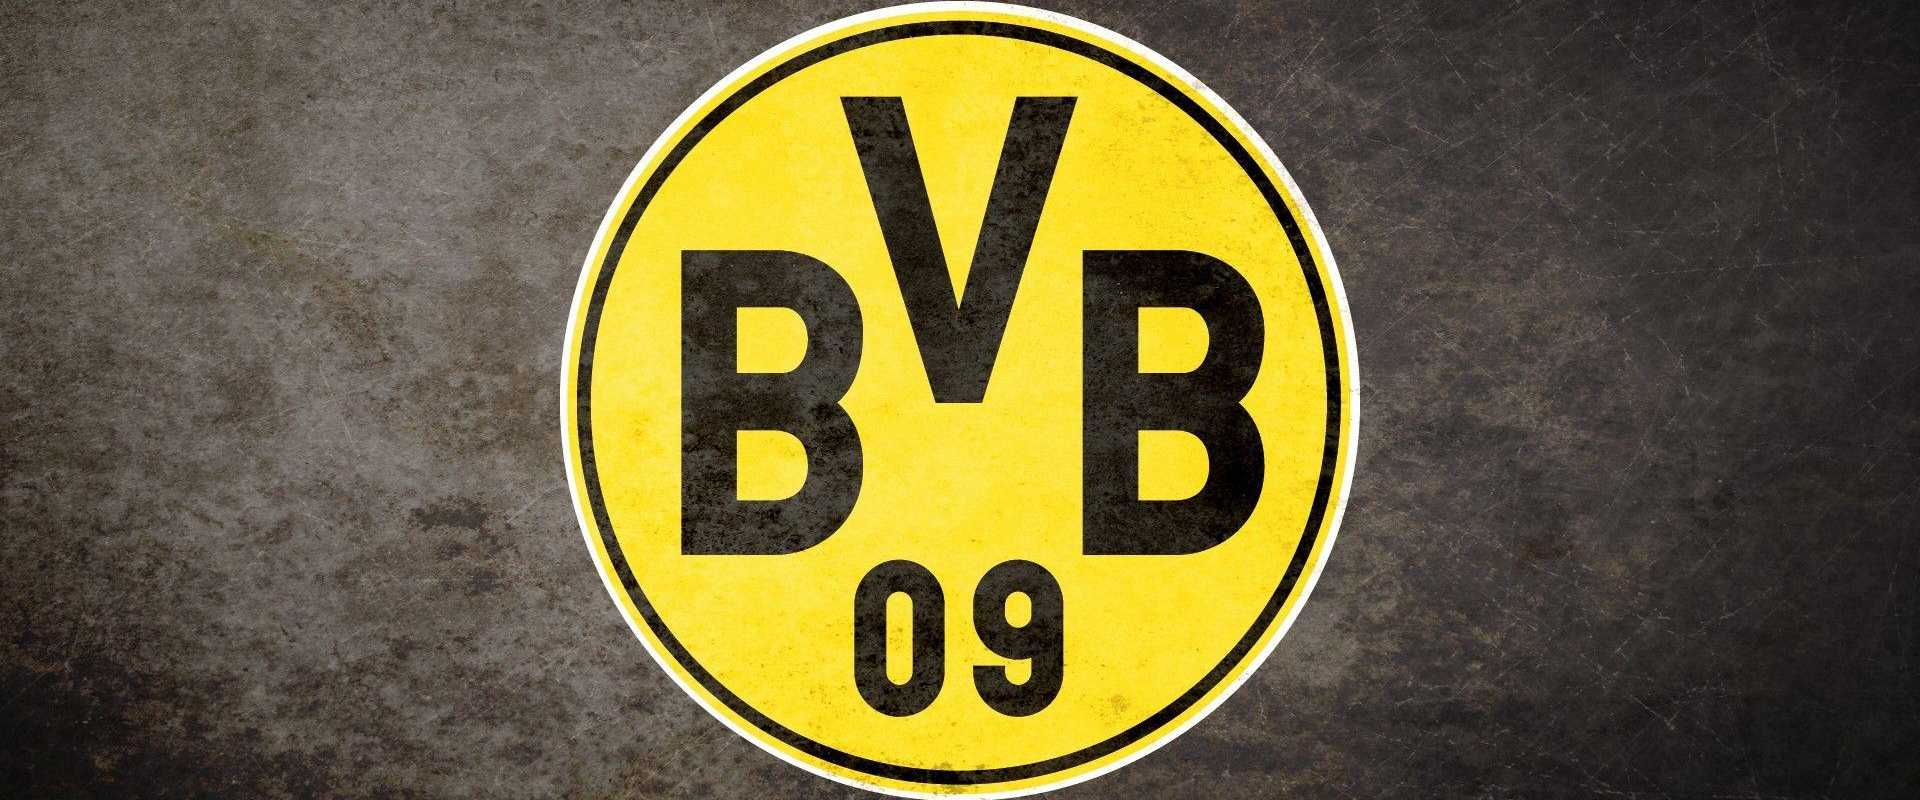 Leipzig Domination
of Dortmund